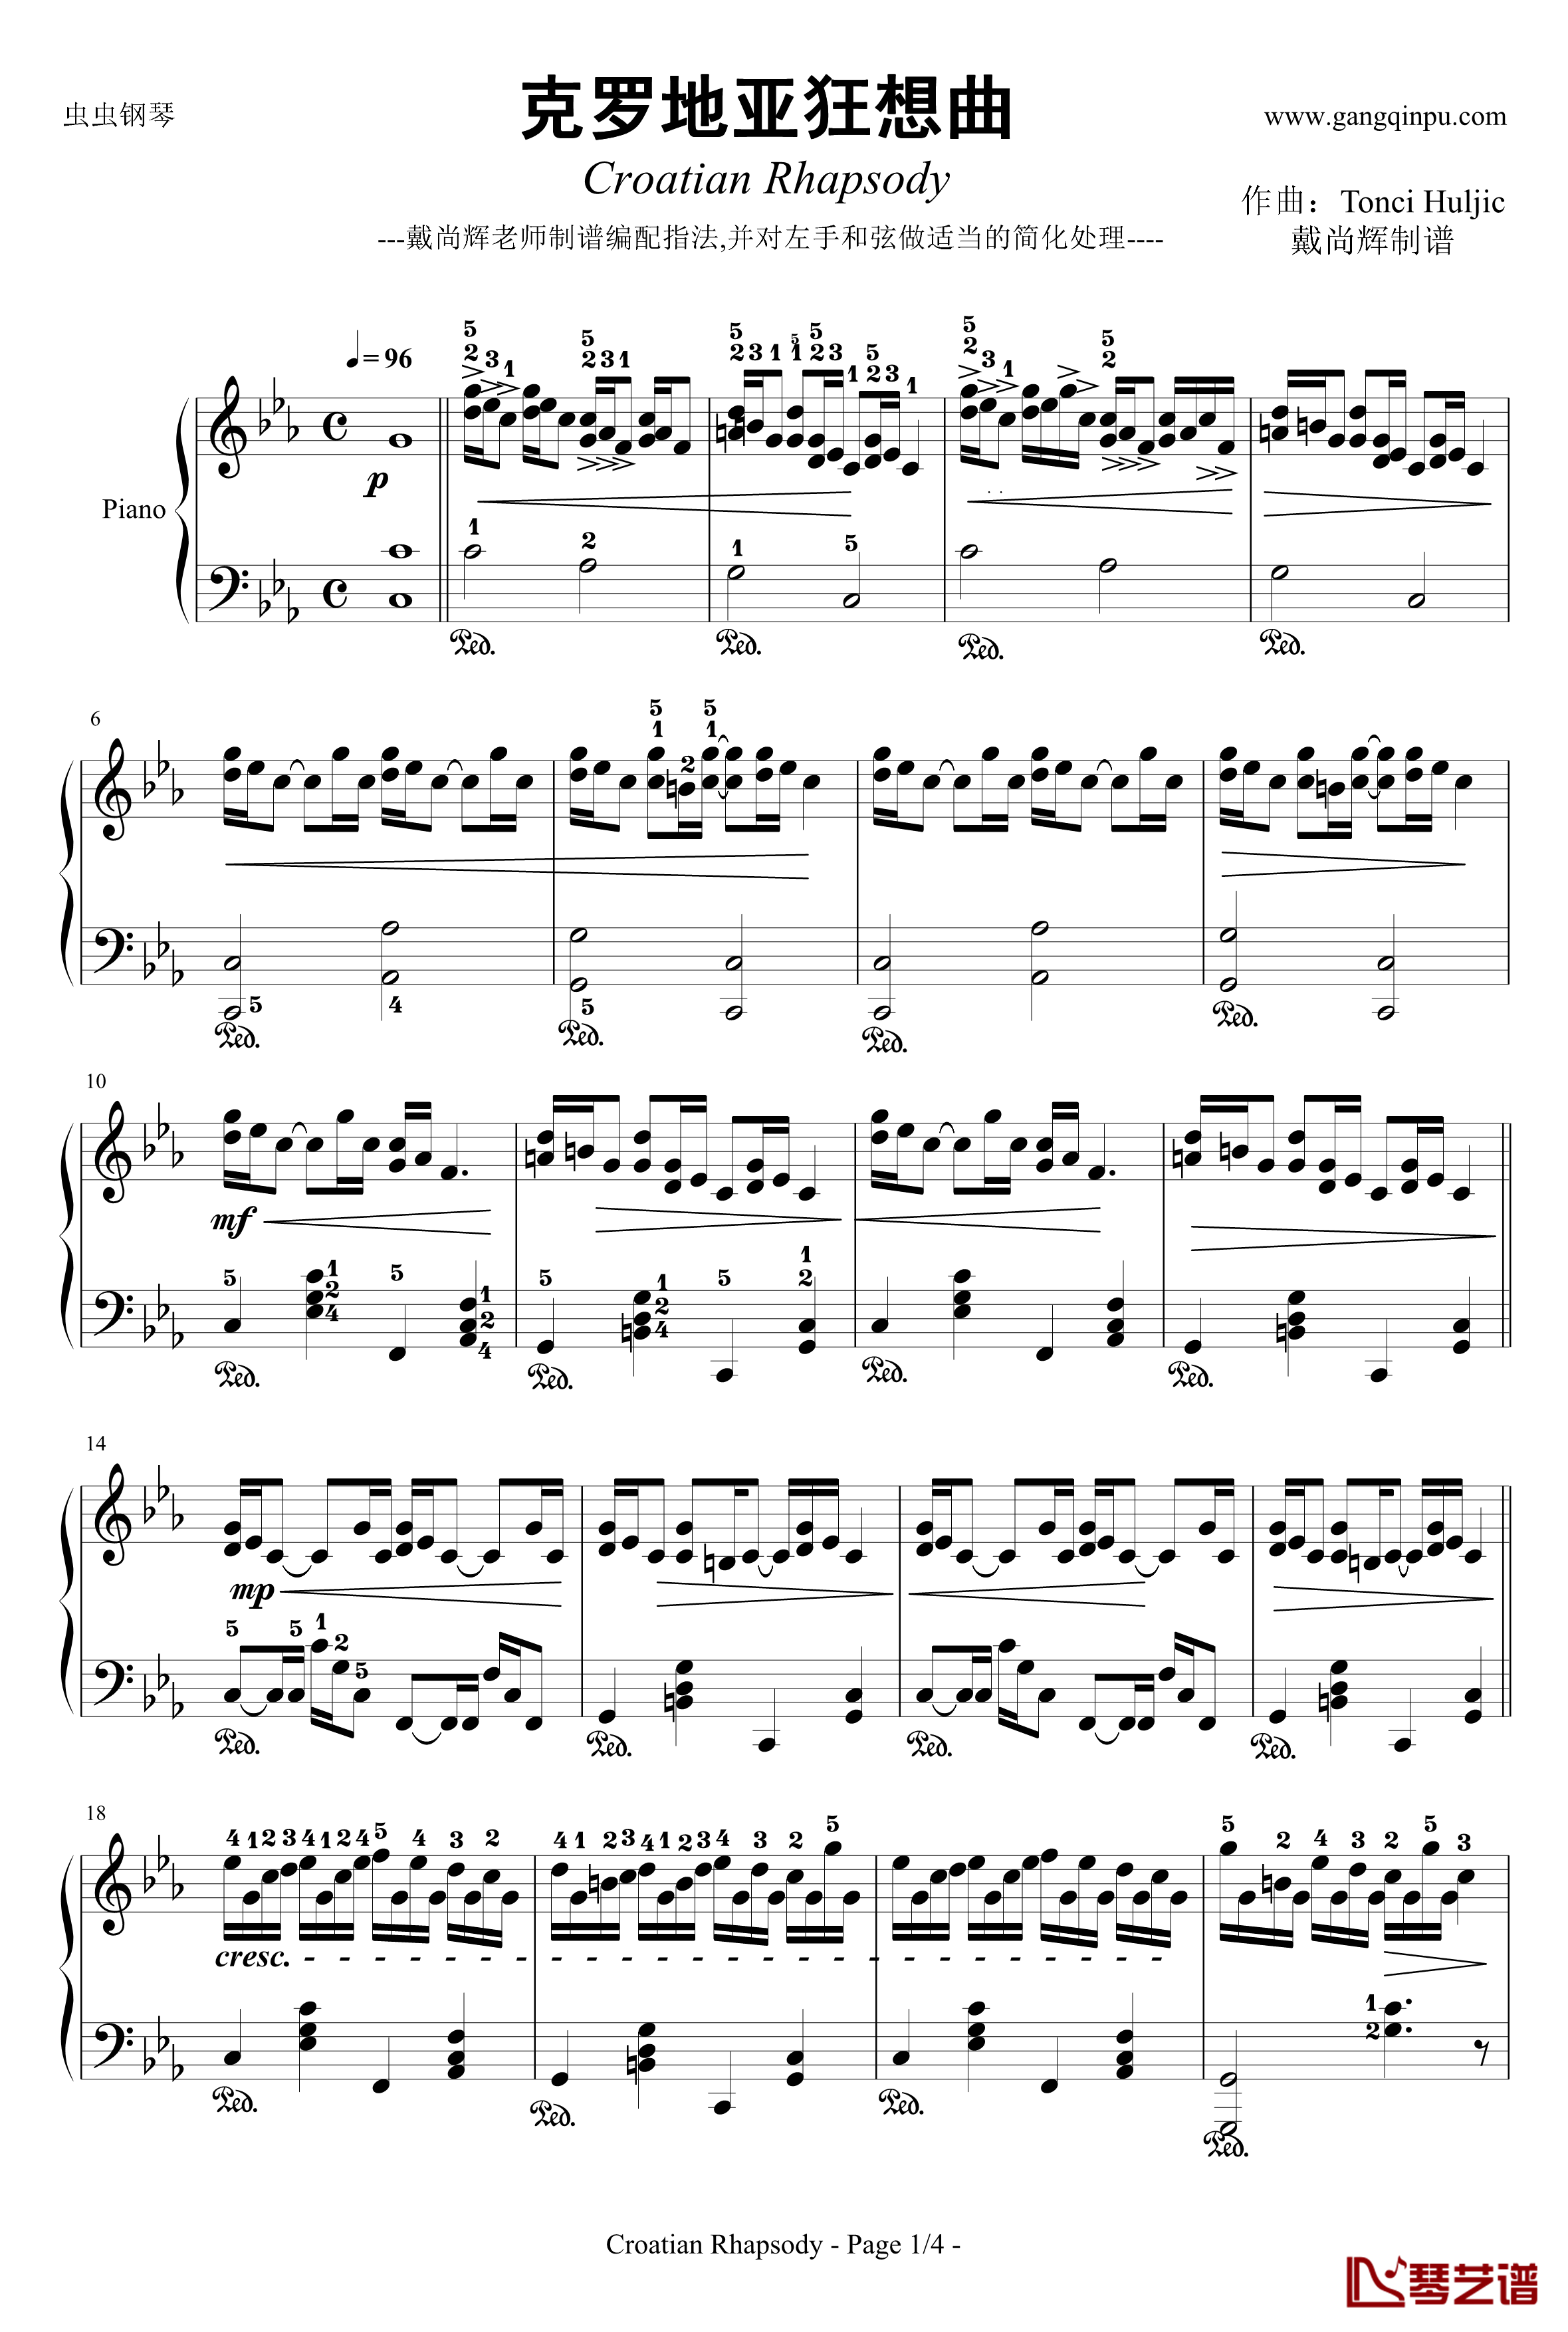 克罗地亚狂想曲钢琴谱-带指法简易版学生最爱-马克西姆-Maksim·Mrvica1